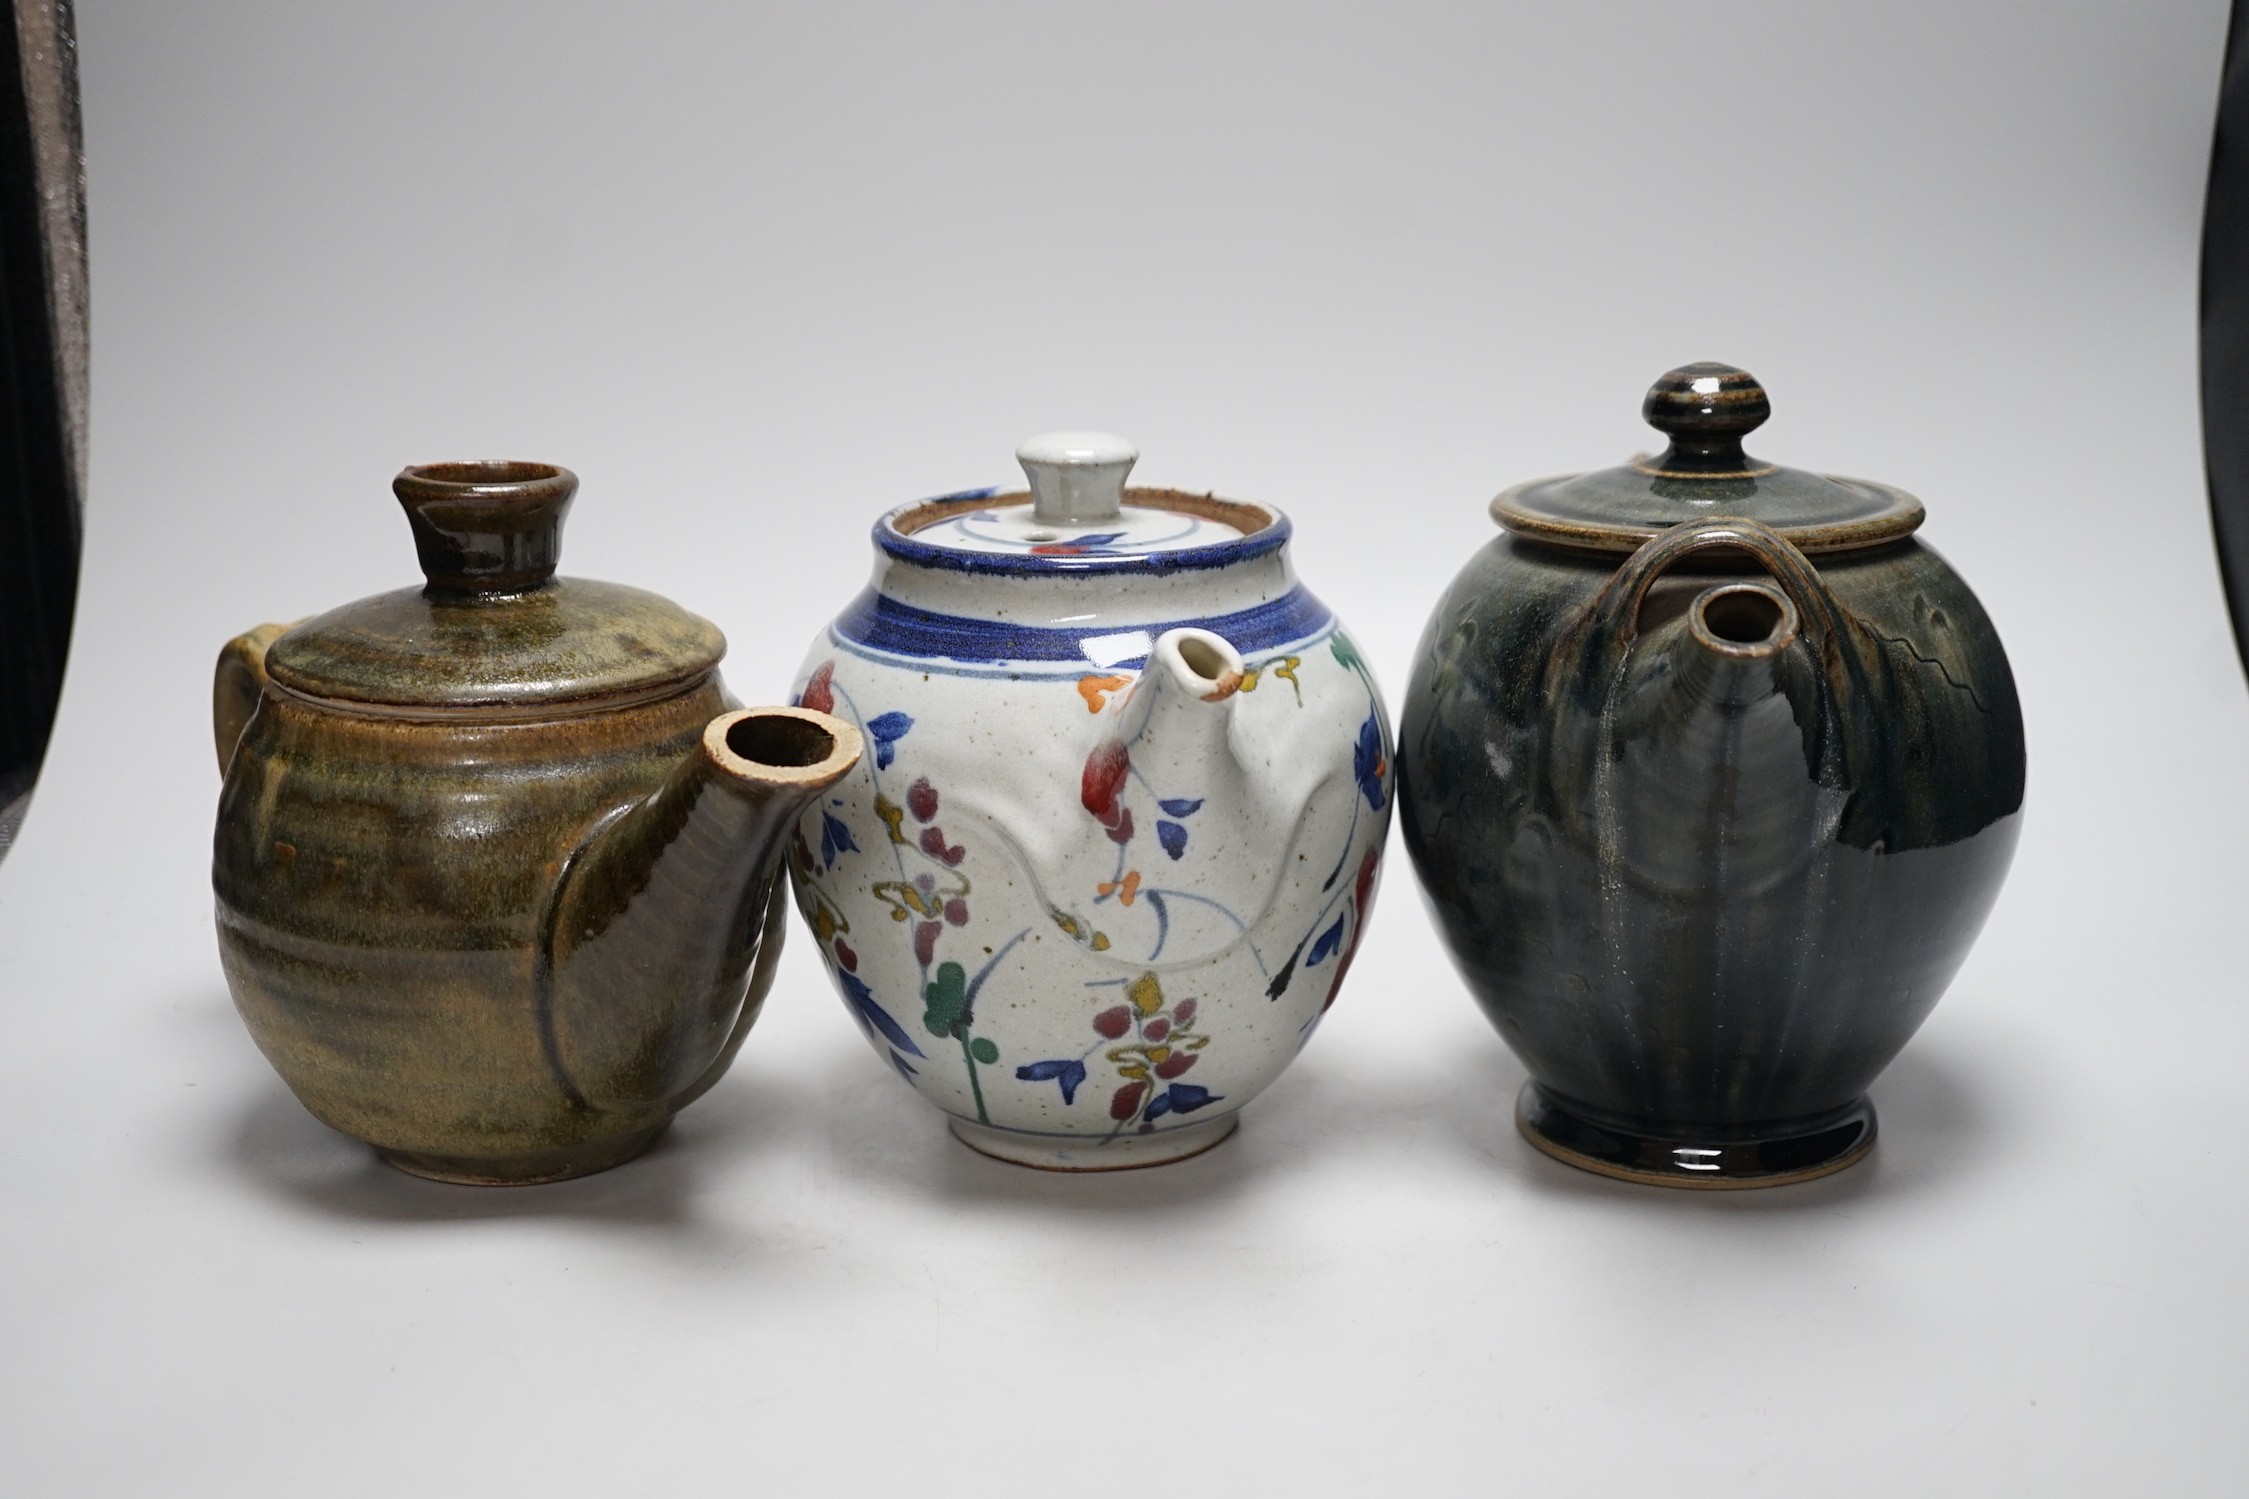 Three studio pottery teapots, 18cm